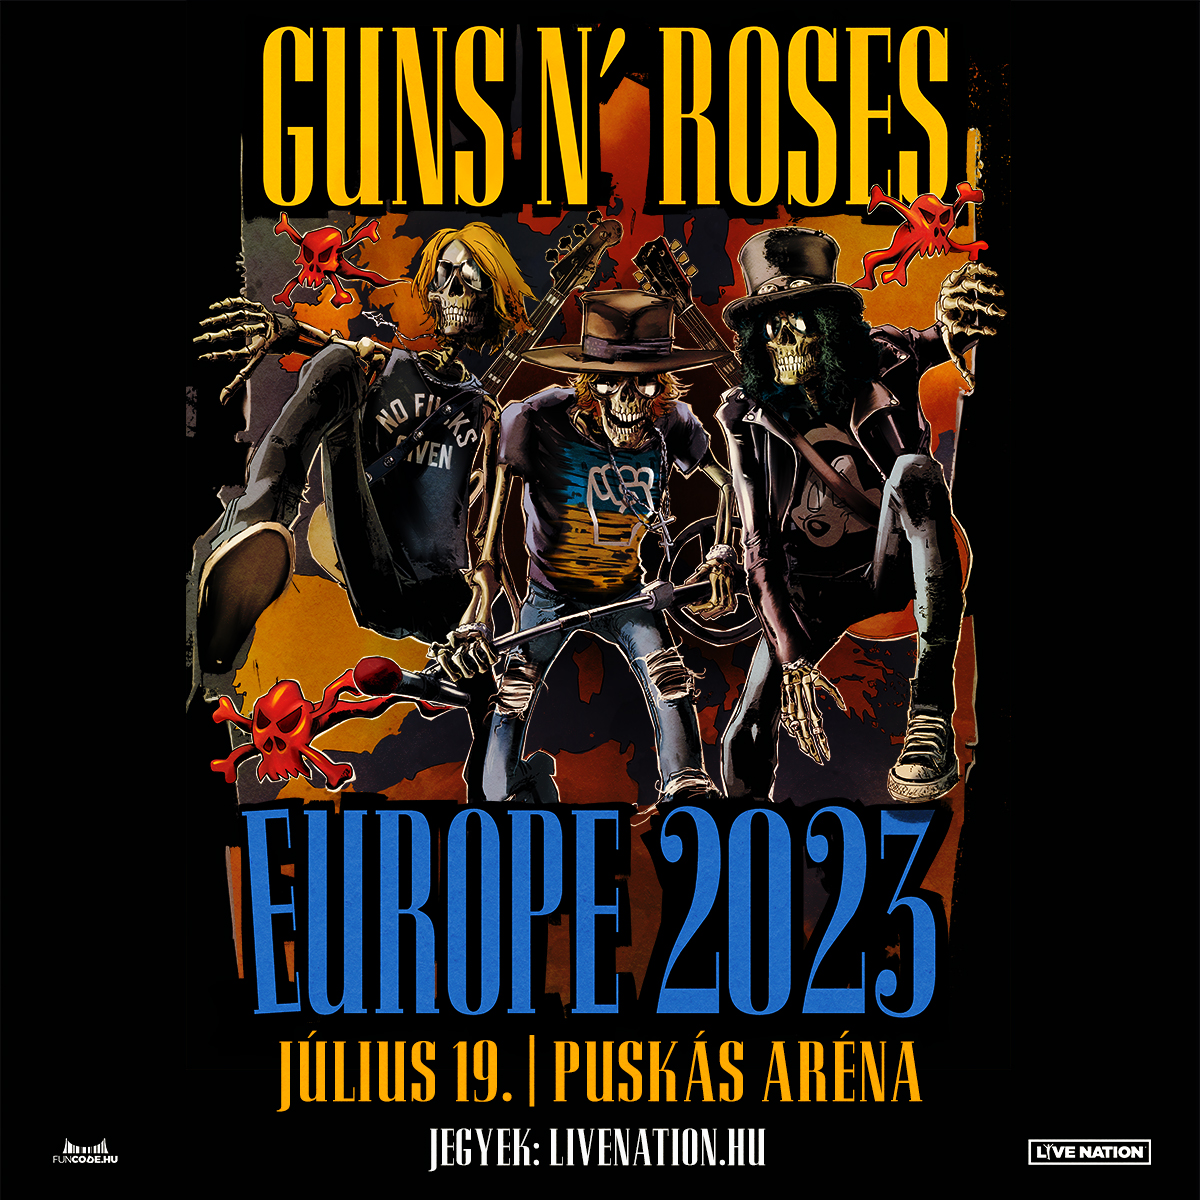 Ez nem tréfa, Budapesten lép fel a Guns N' Roses